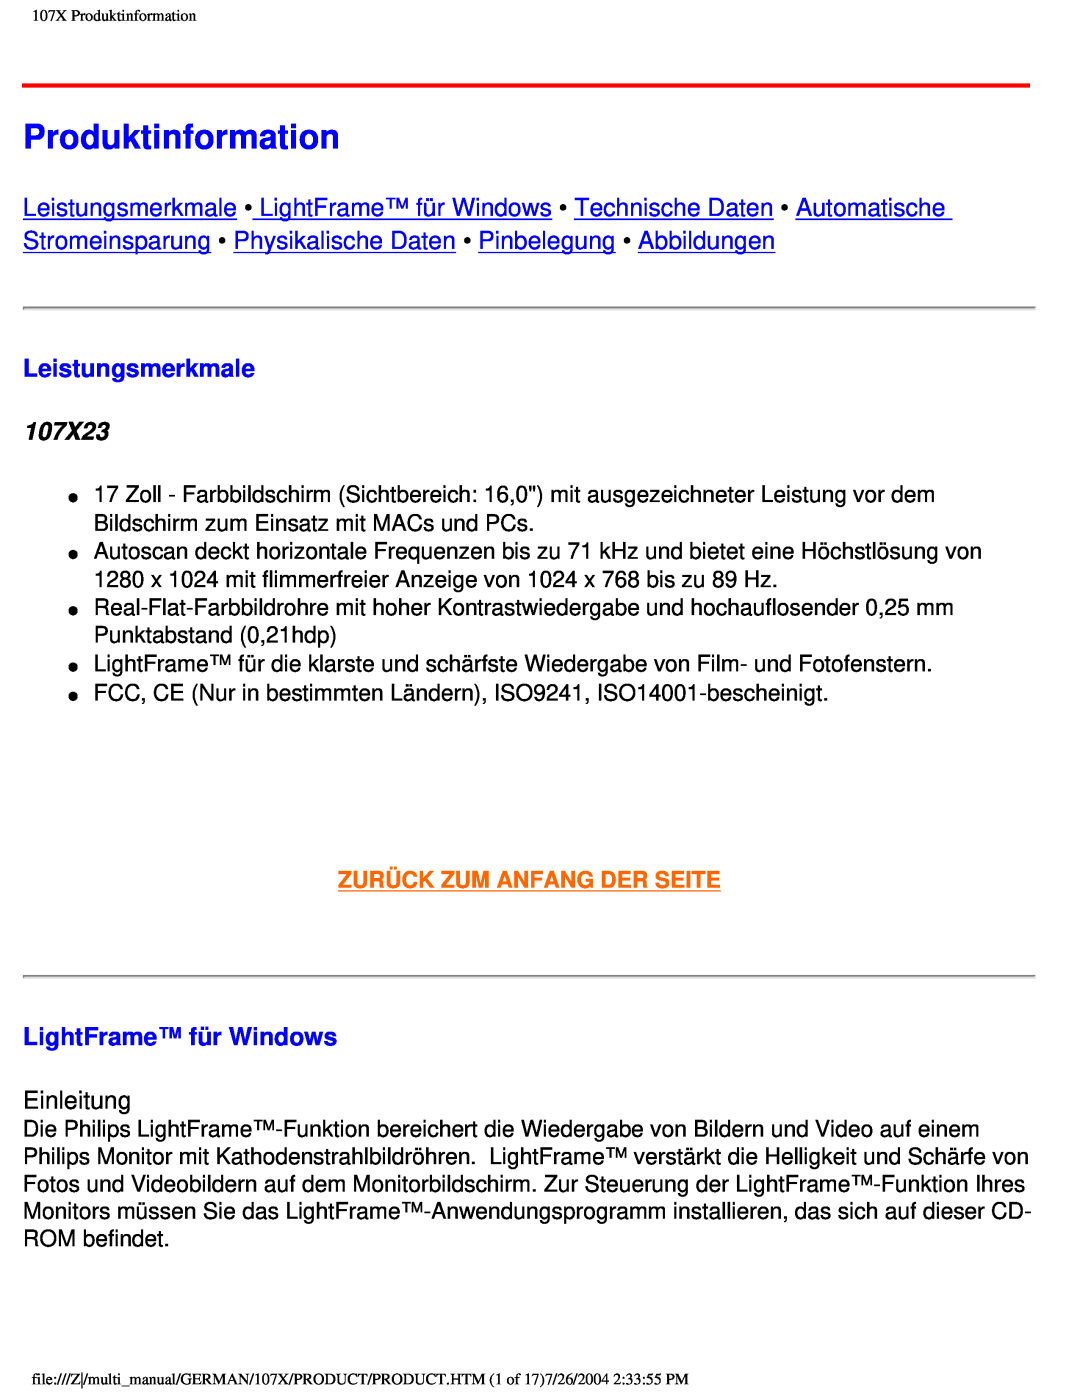 Philips user manual Produktinformation, Leistungsmerkmale, 107X23, LightFrame für Windows, Zurück Zum Anfang Der Seite 